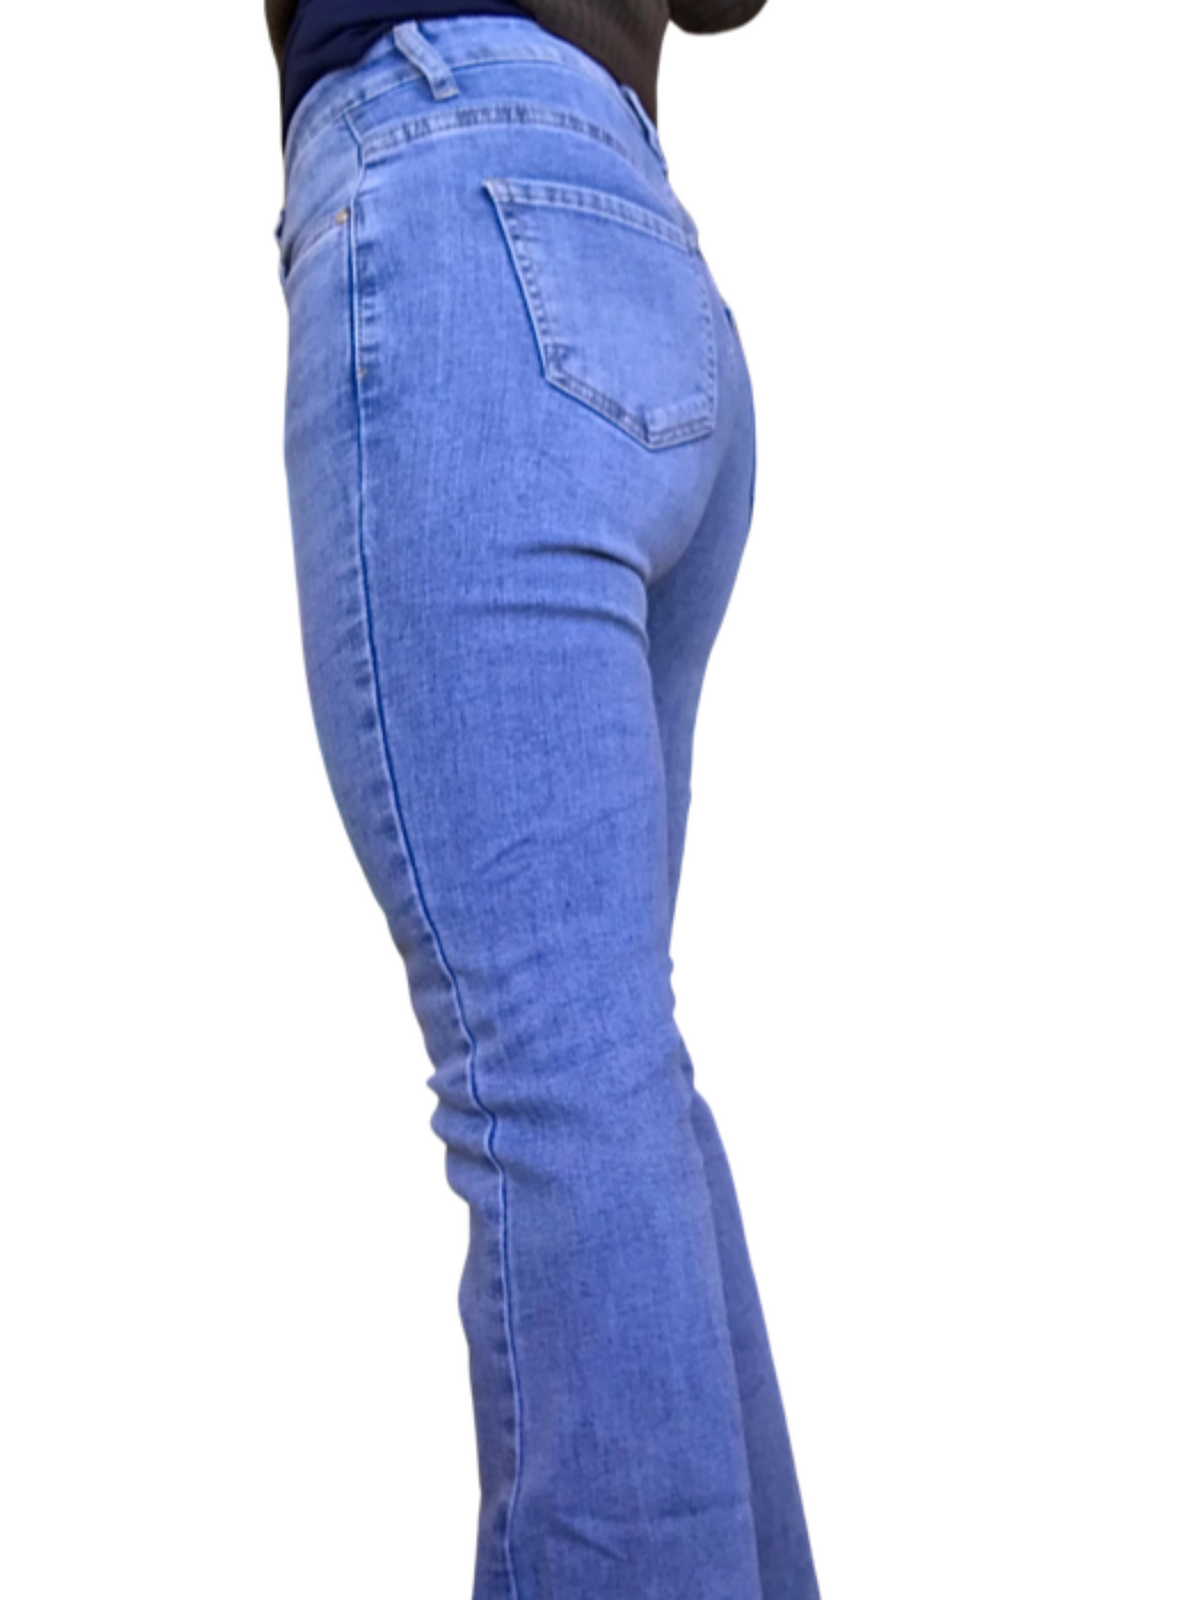 Jeans flare bleu clair 28 pouces de longueur